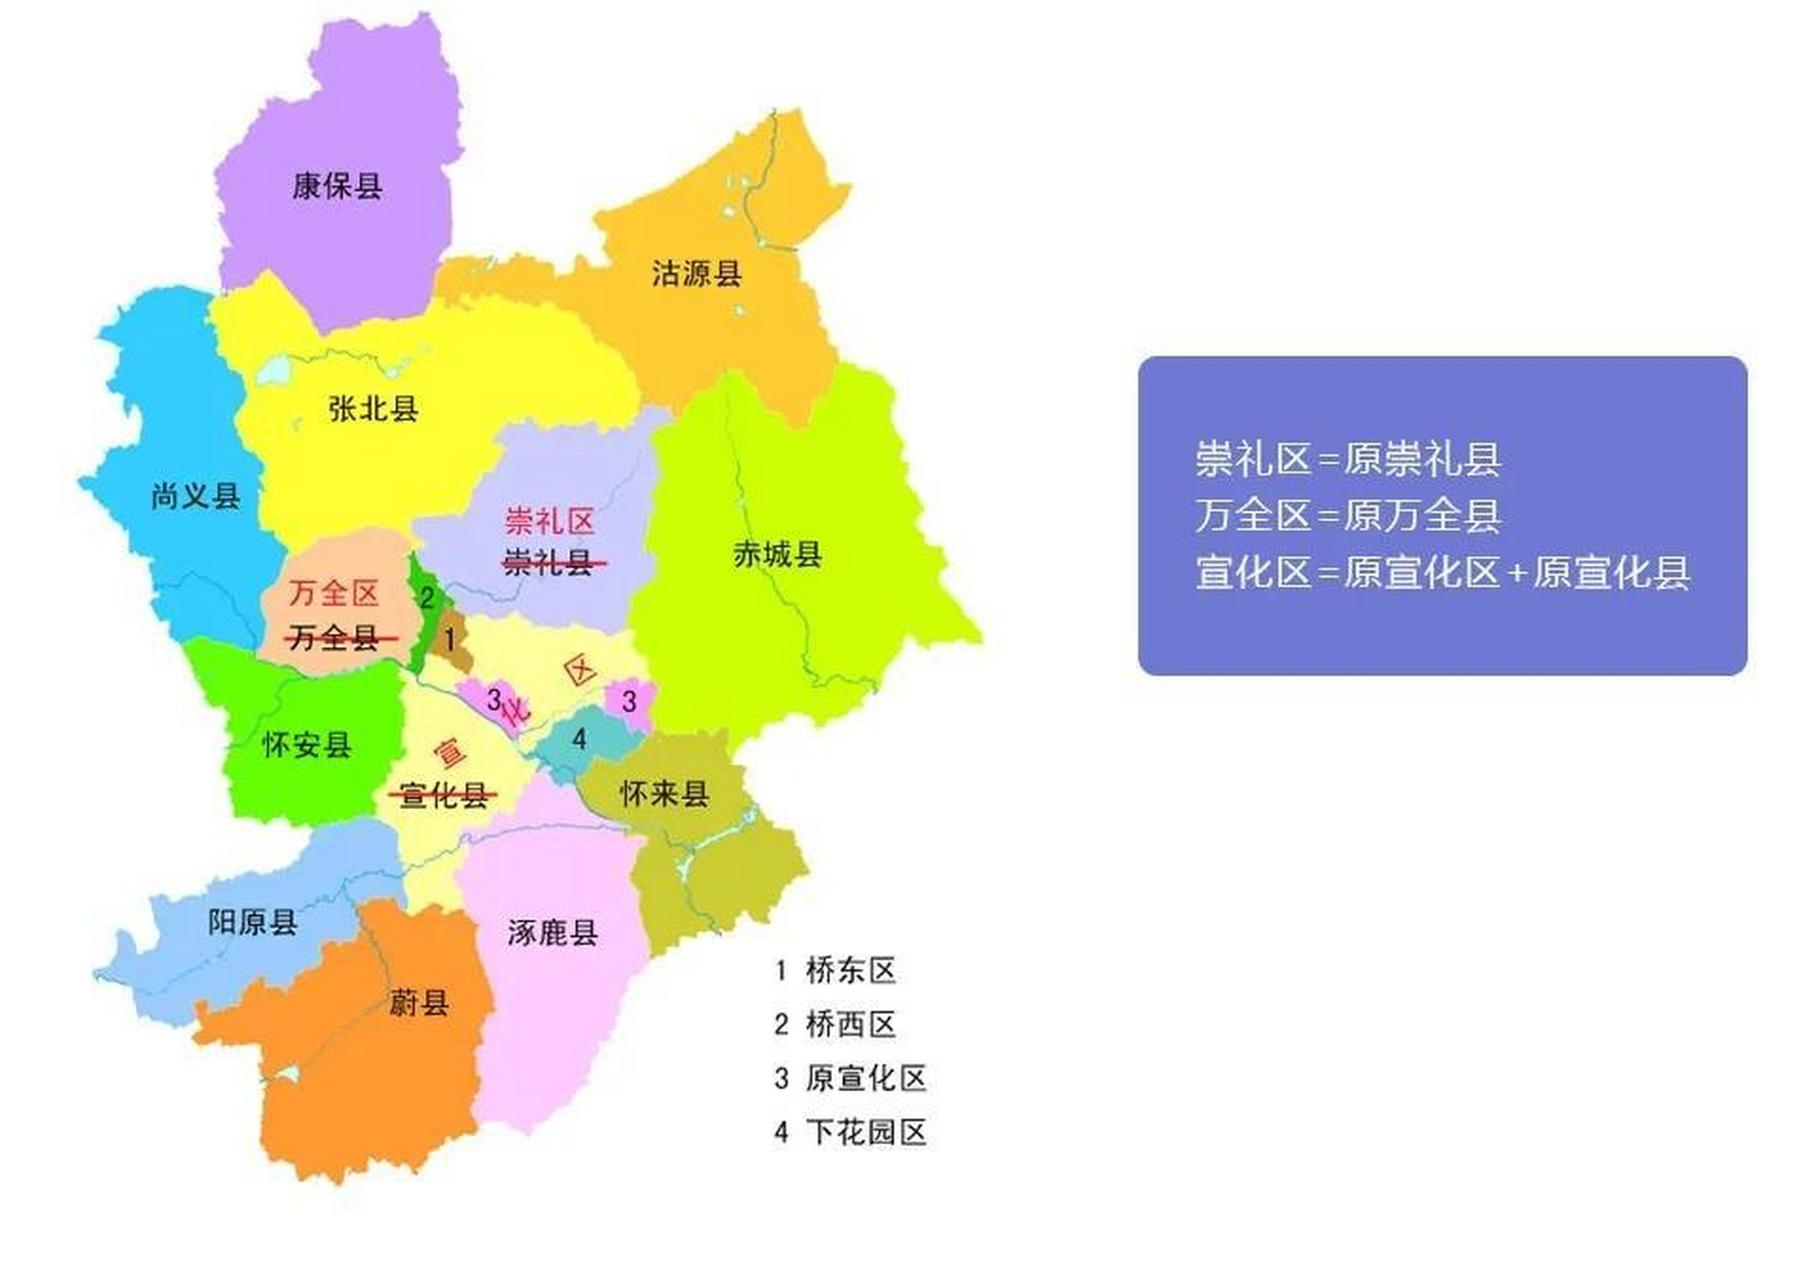 一张河北保定市的行政区划图上,居然出现涿鹿市,作为一个保定人,我